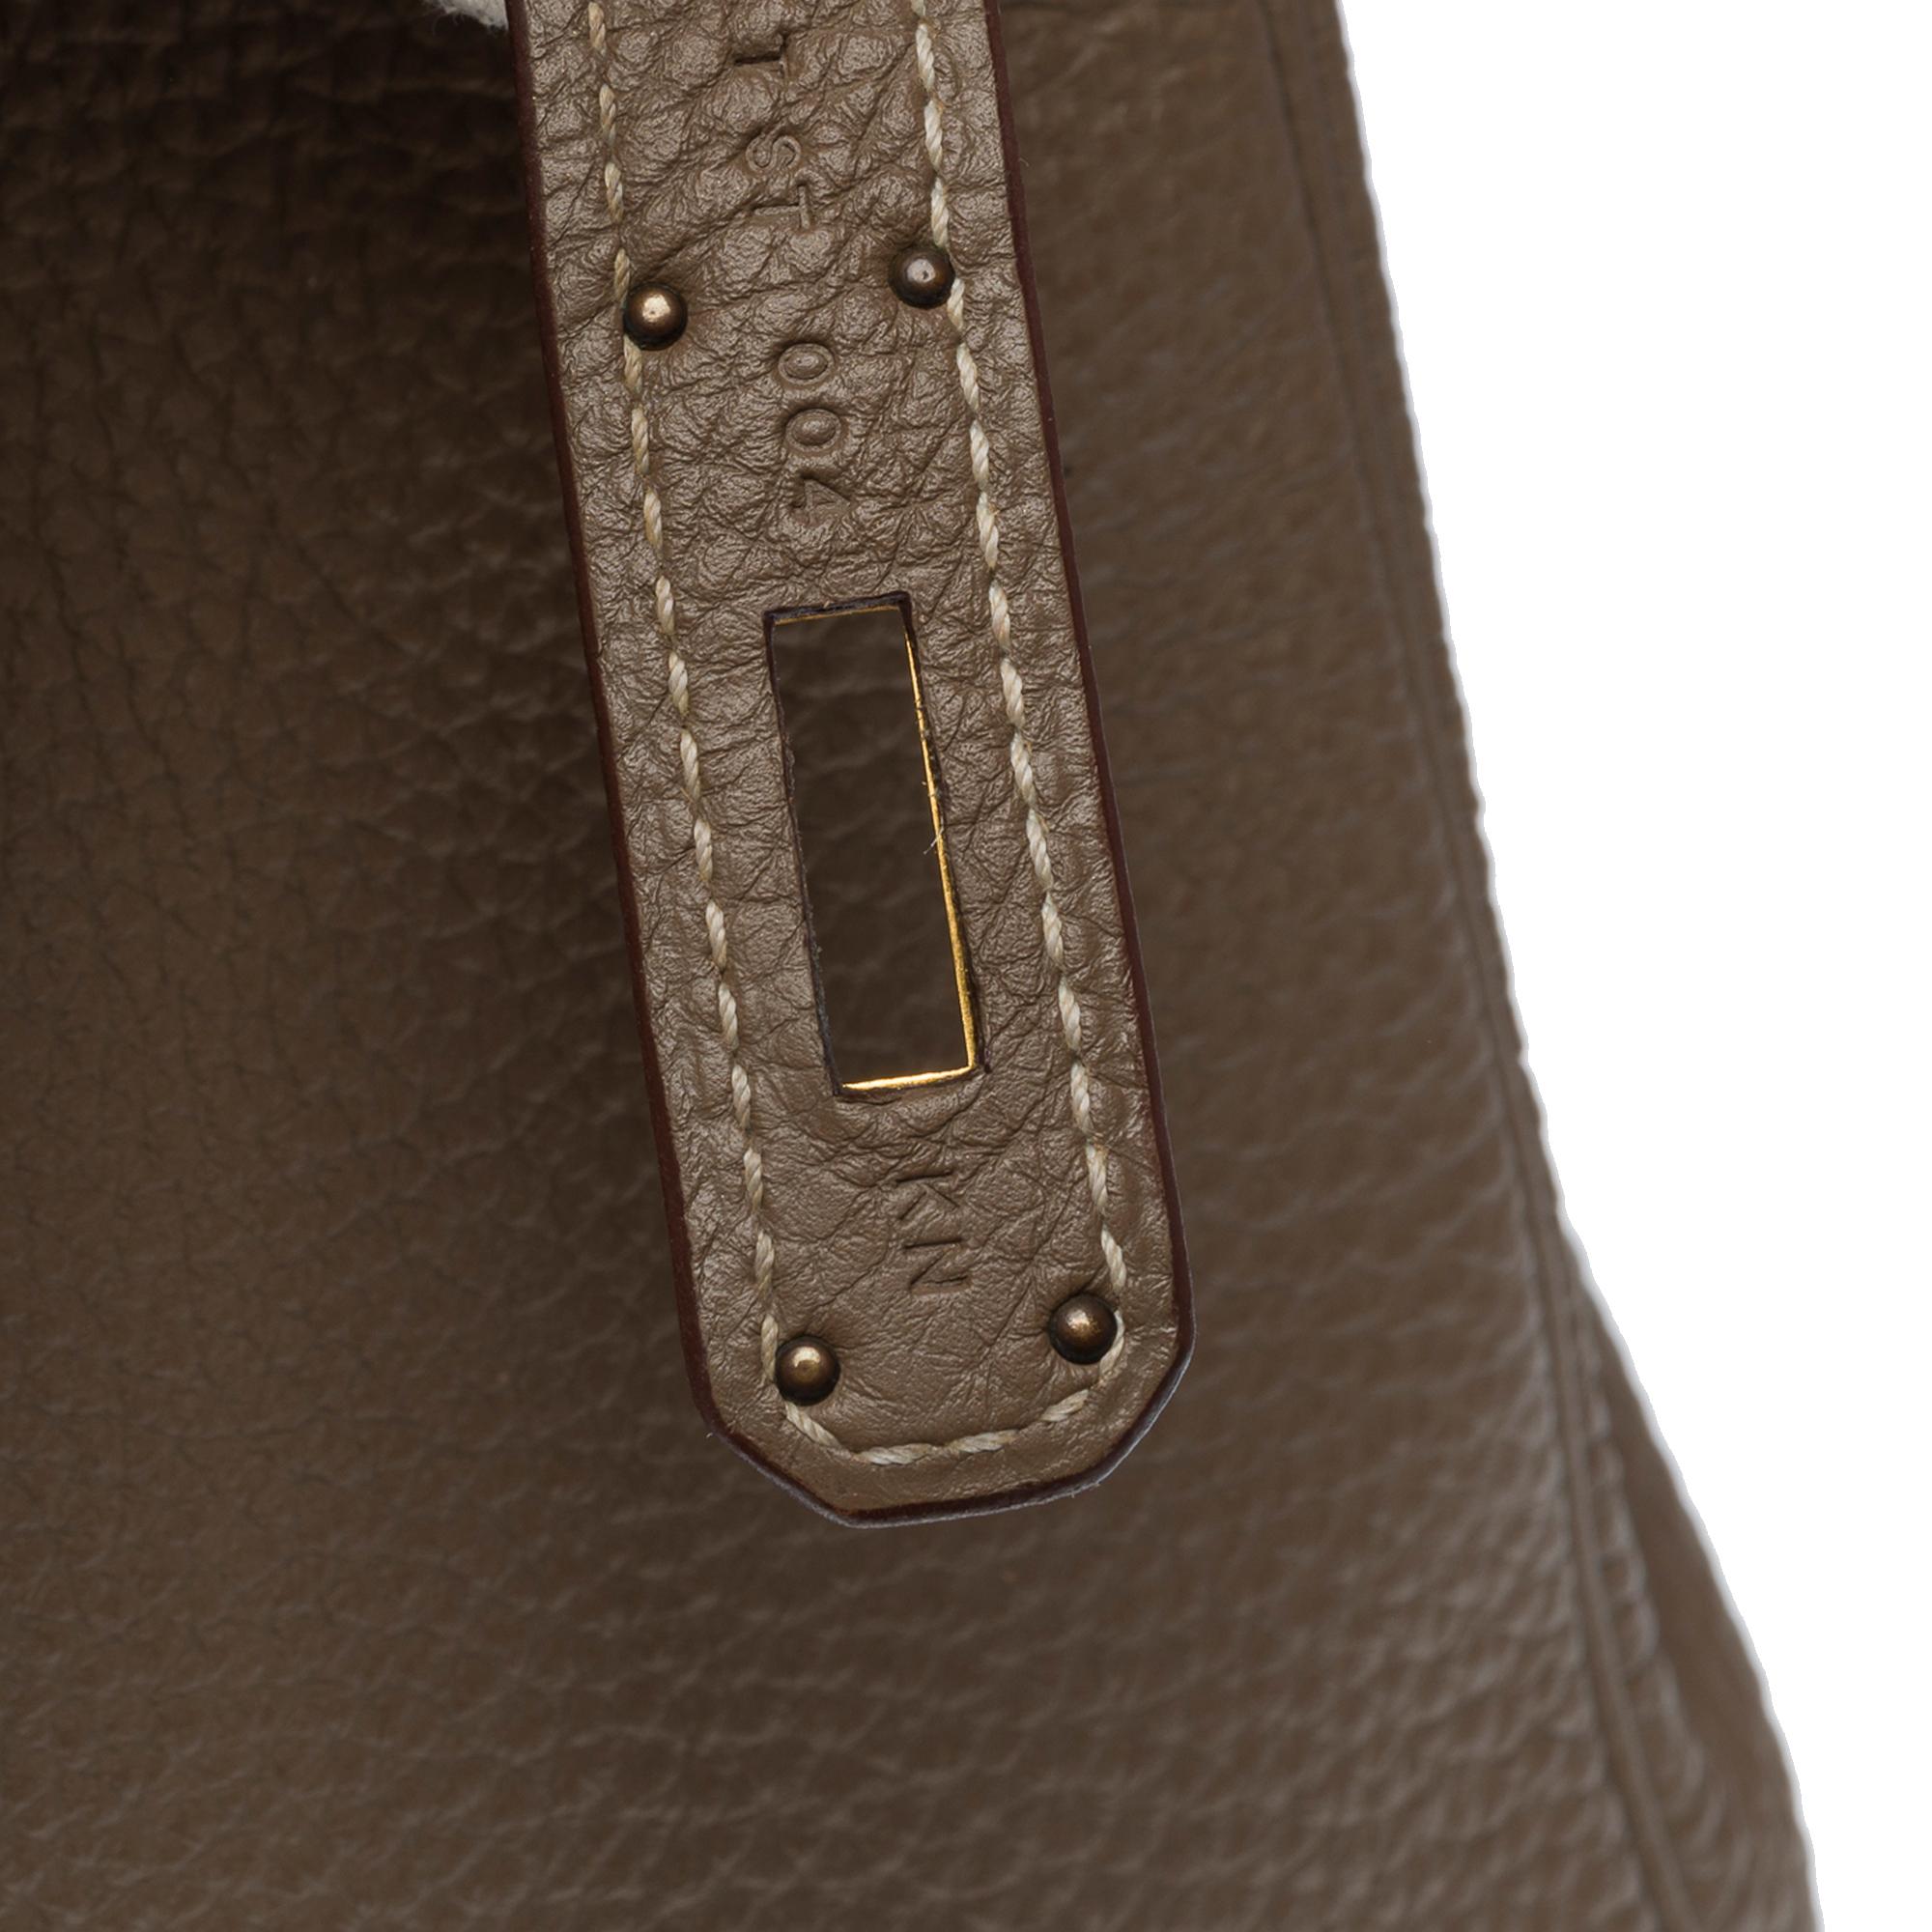 Superb Hermès Kelly 32 retourne handbag strap in Togo etoupe leather , GHW 4